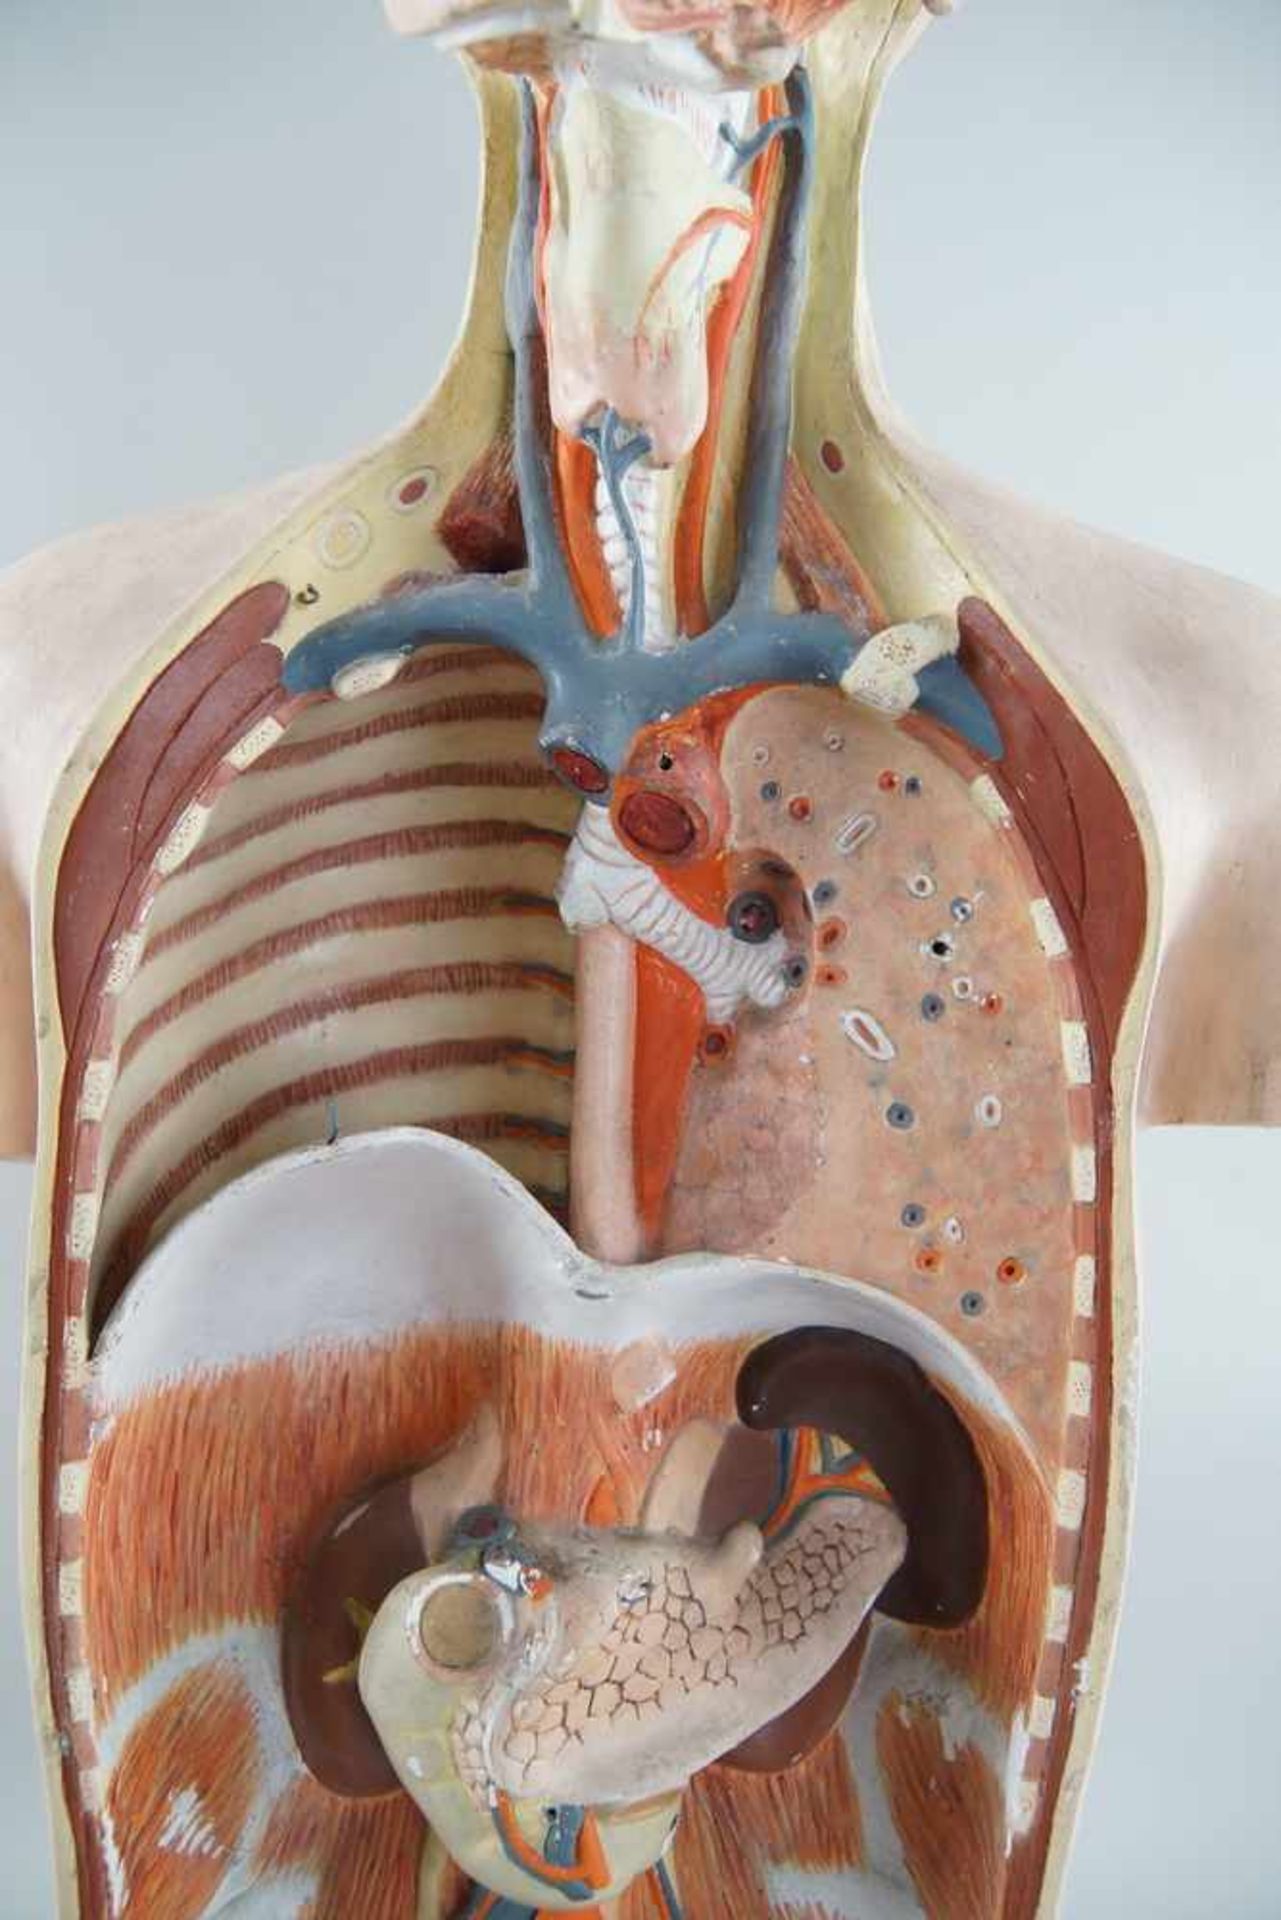 Anatomisches Modell eines menschlichen Oberkörpers mit verschiedenen Organen,Altersspuren/ - Bild 5 aus 7